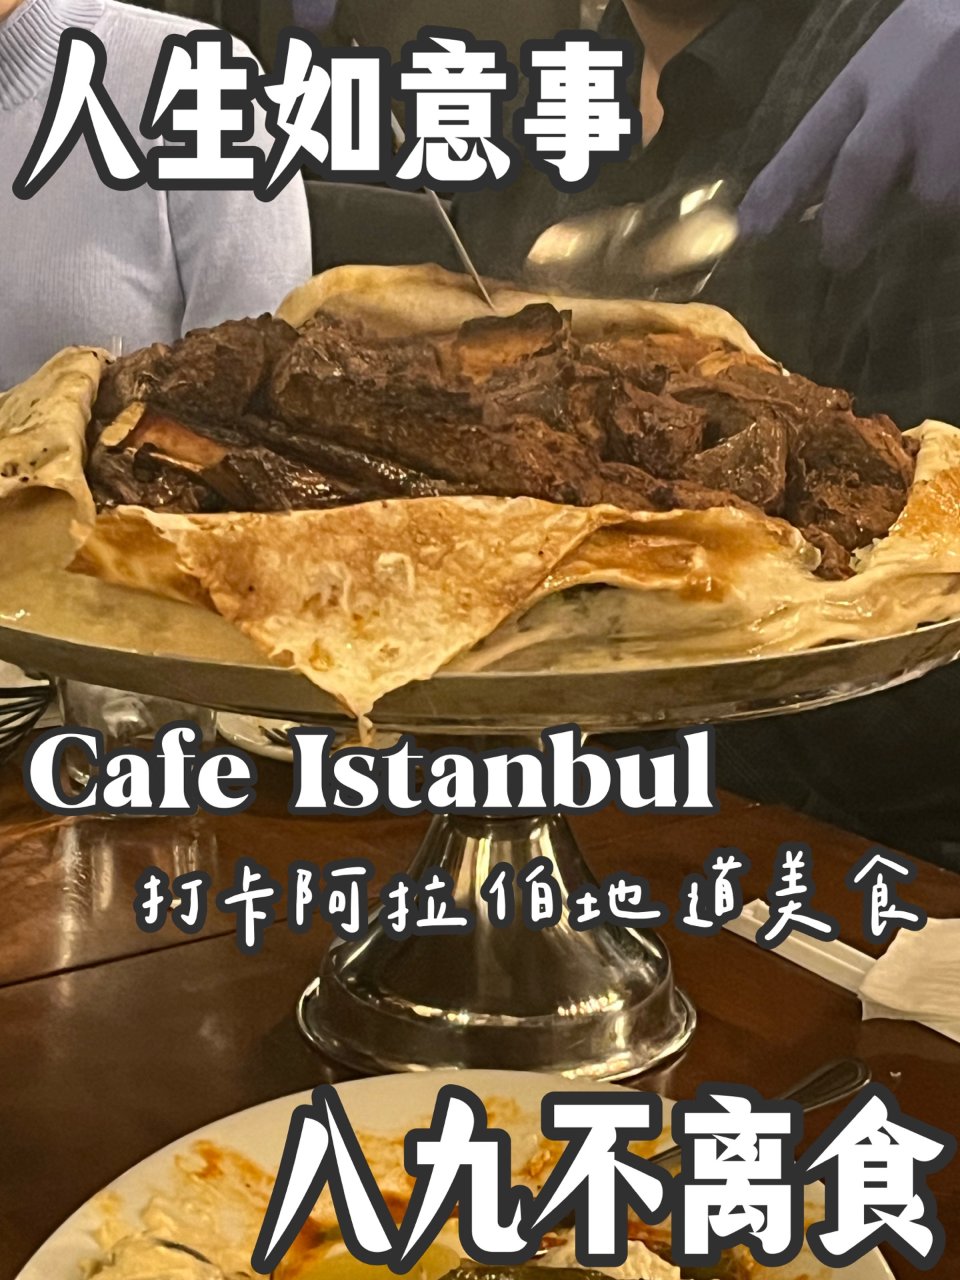 Cafe Istanbul of Dublin